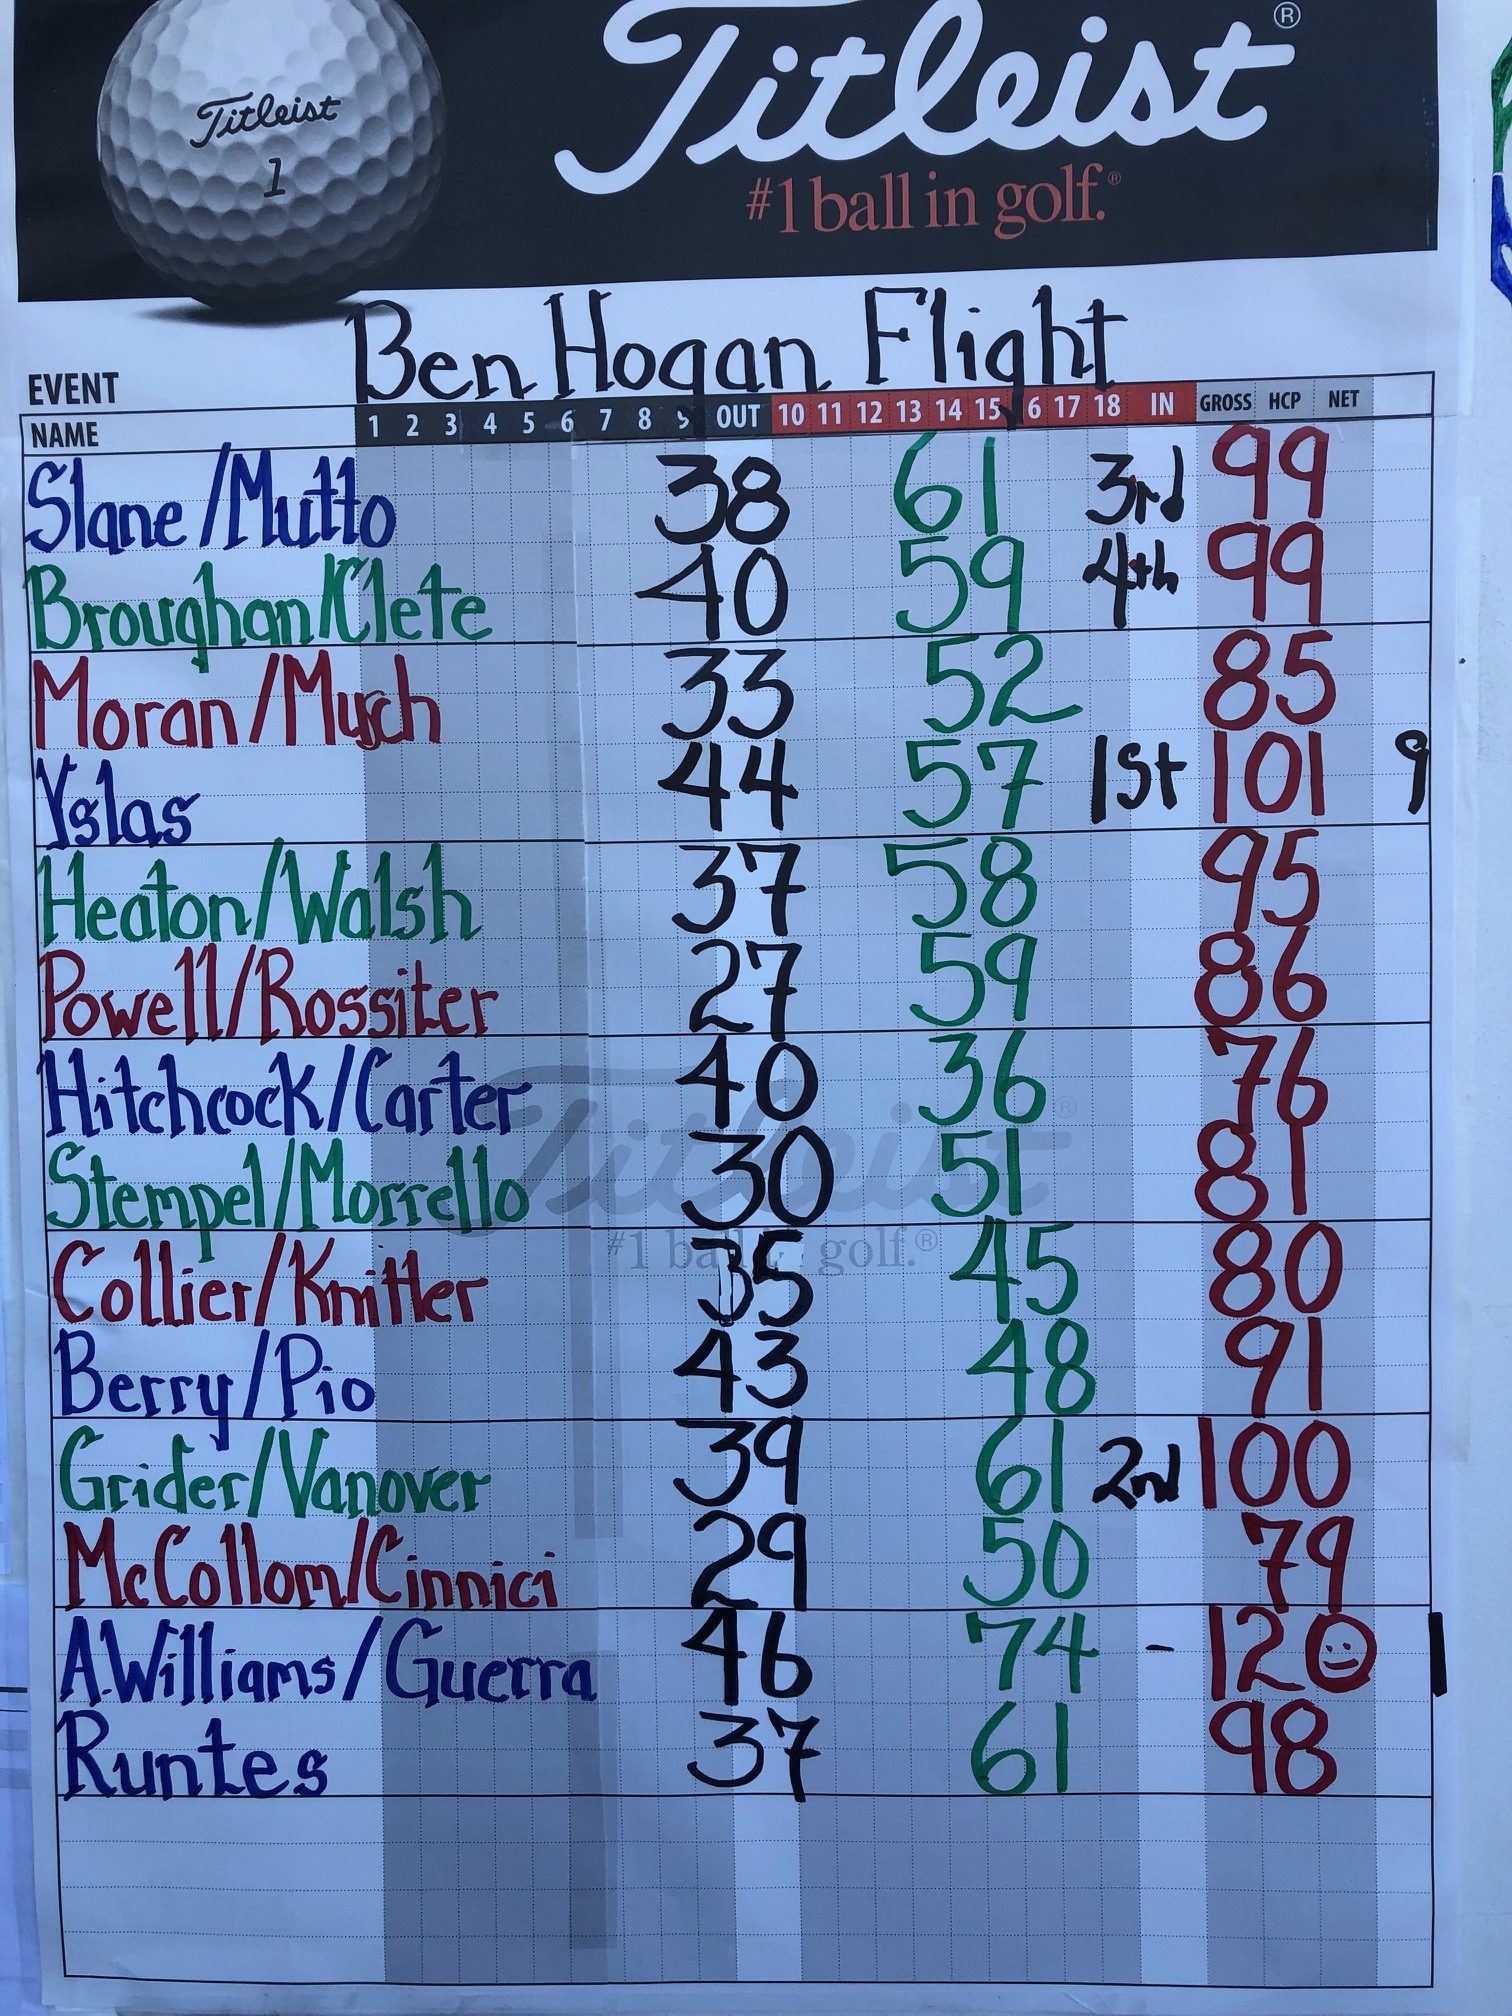 Ben Hogan Flight Fri/Sat